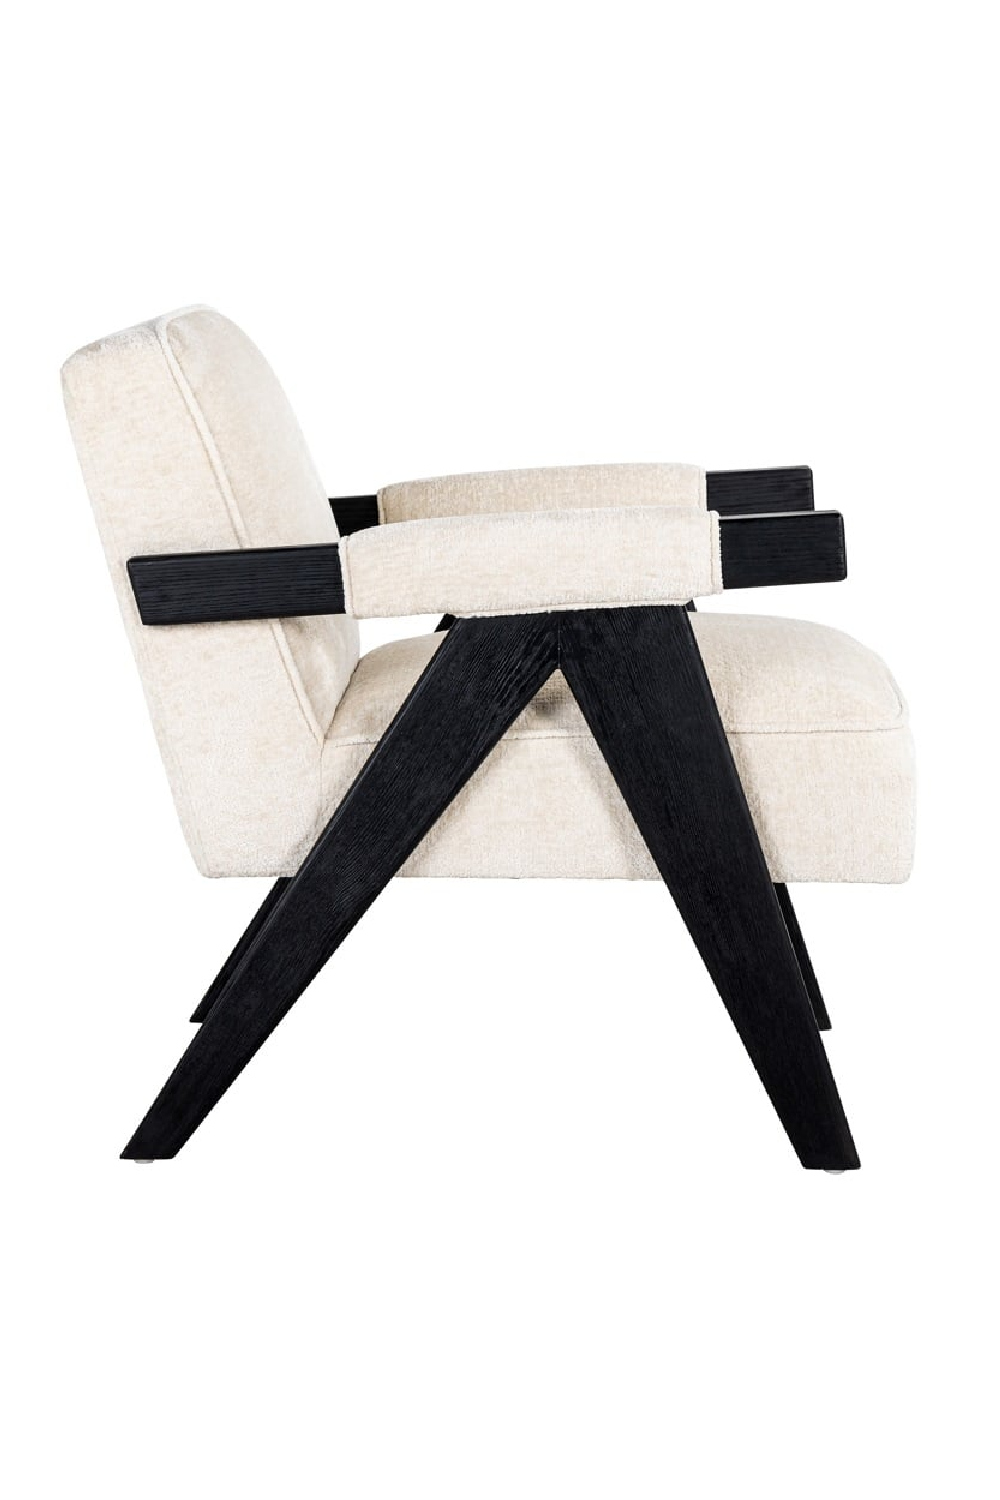 White Chenille Easy Chair | OROA Cooper | Oroa.com